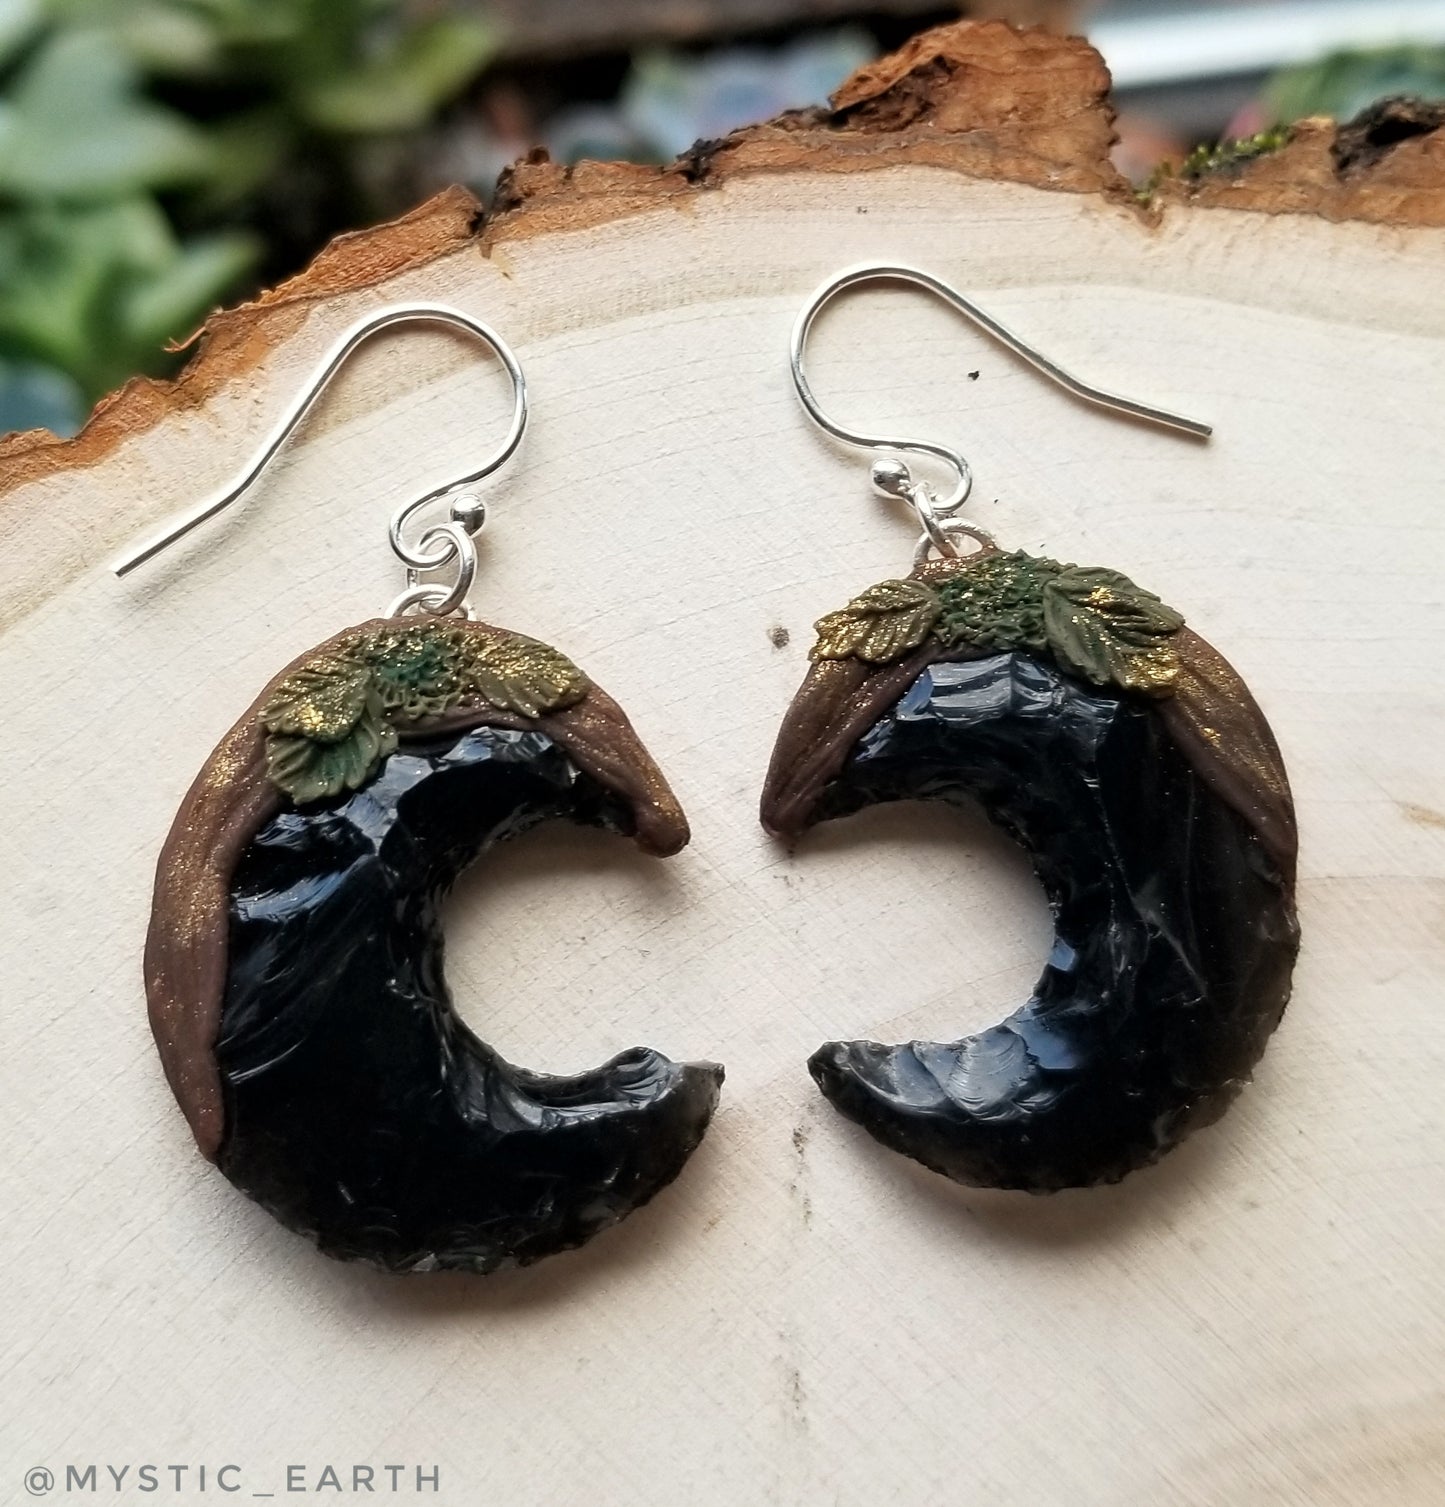 Earthy Obsidian Moon Earrings in Gold on Black 925 Silver